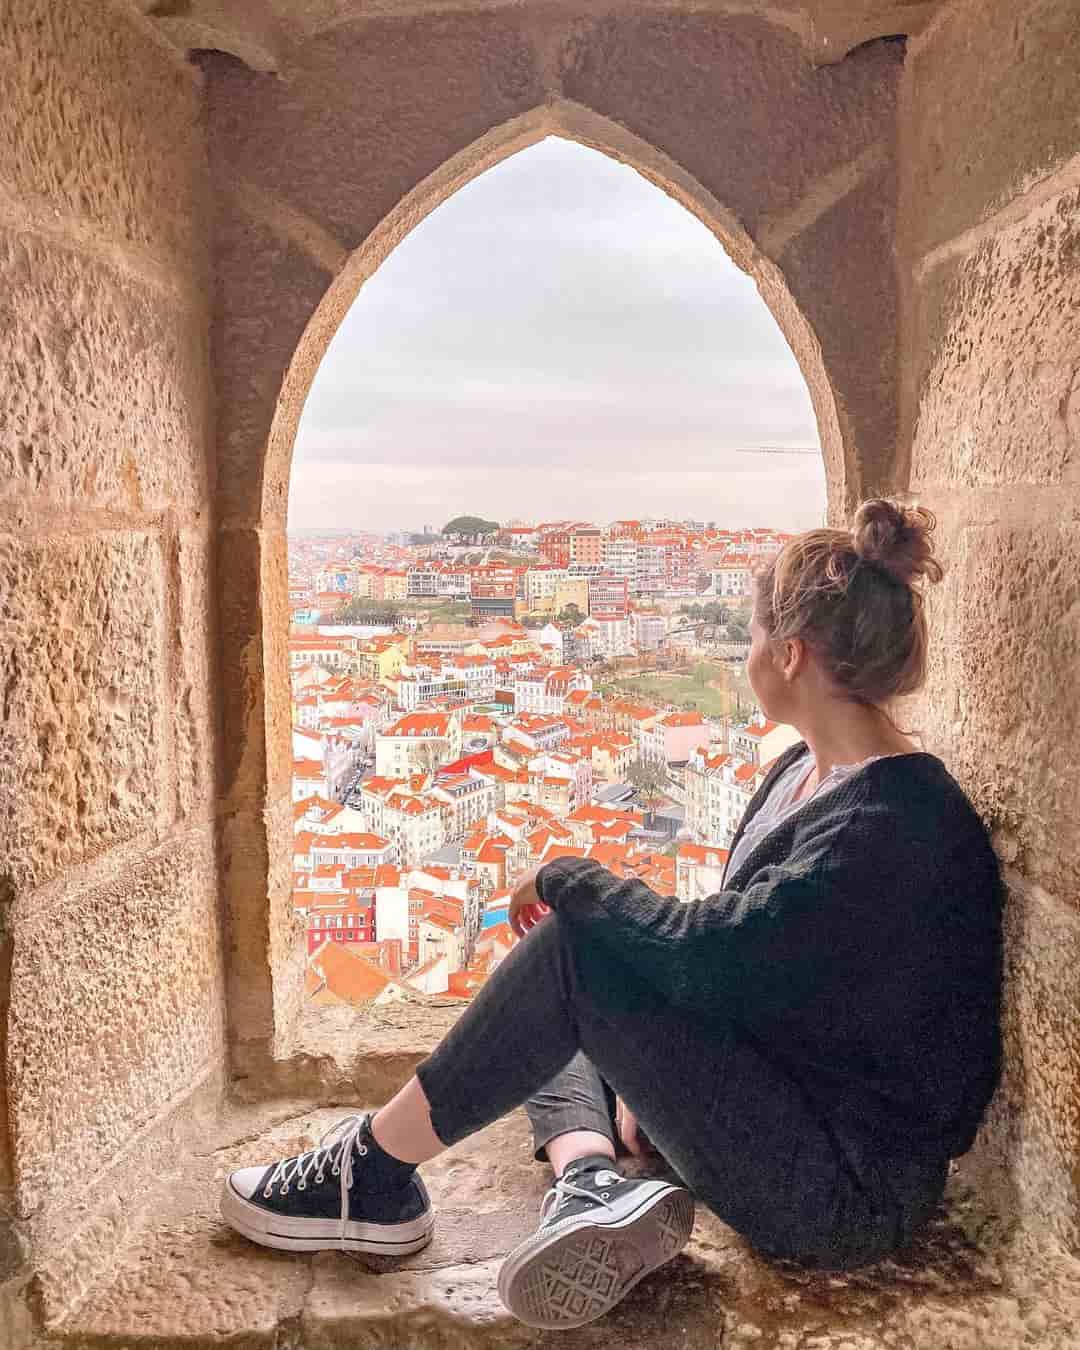 13 Destinasi Wisata Portugal, Keindahannya Buat Terus Berdecak Kagum